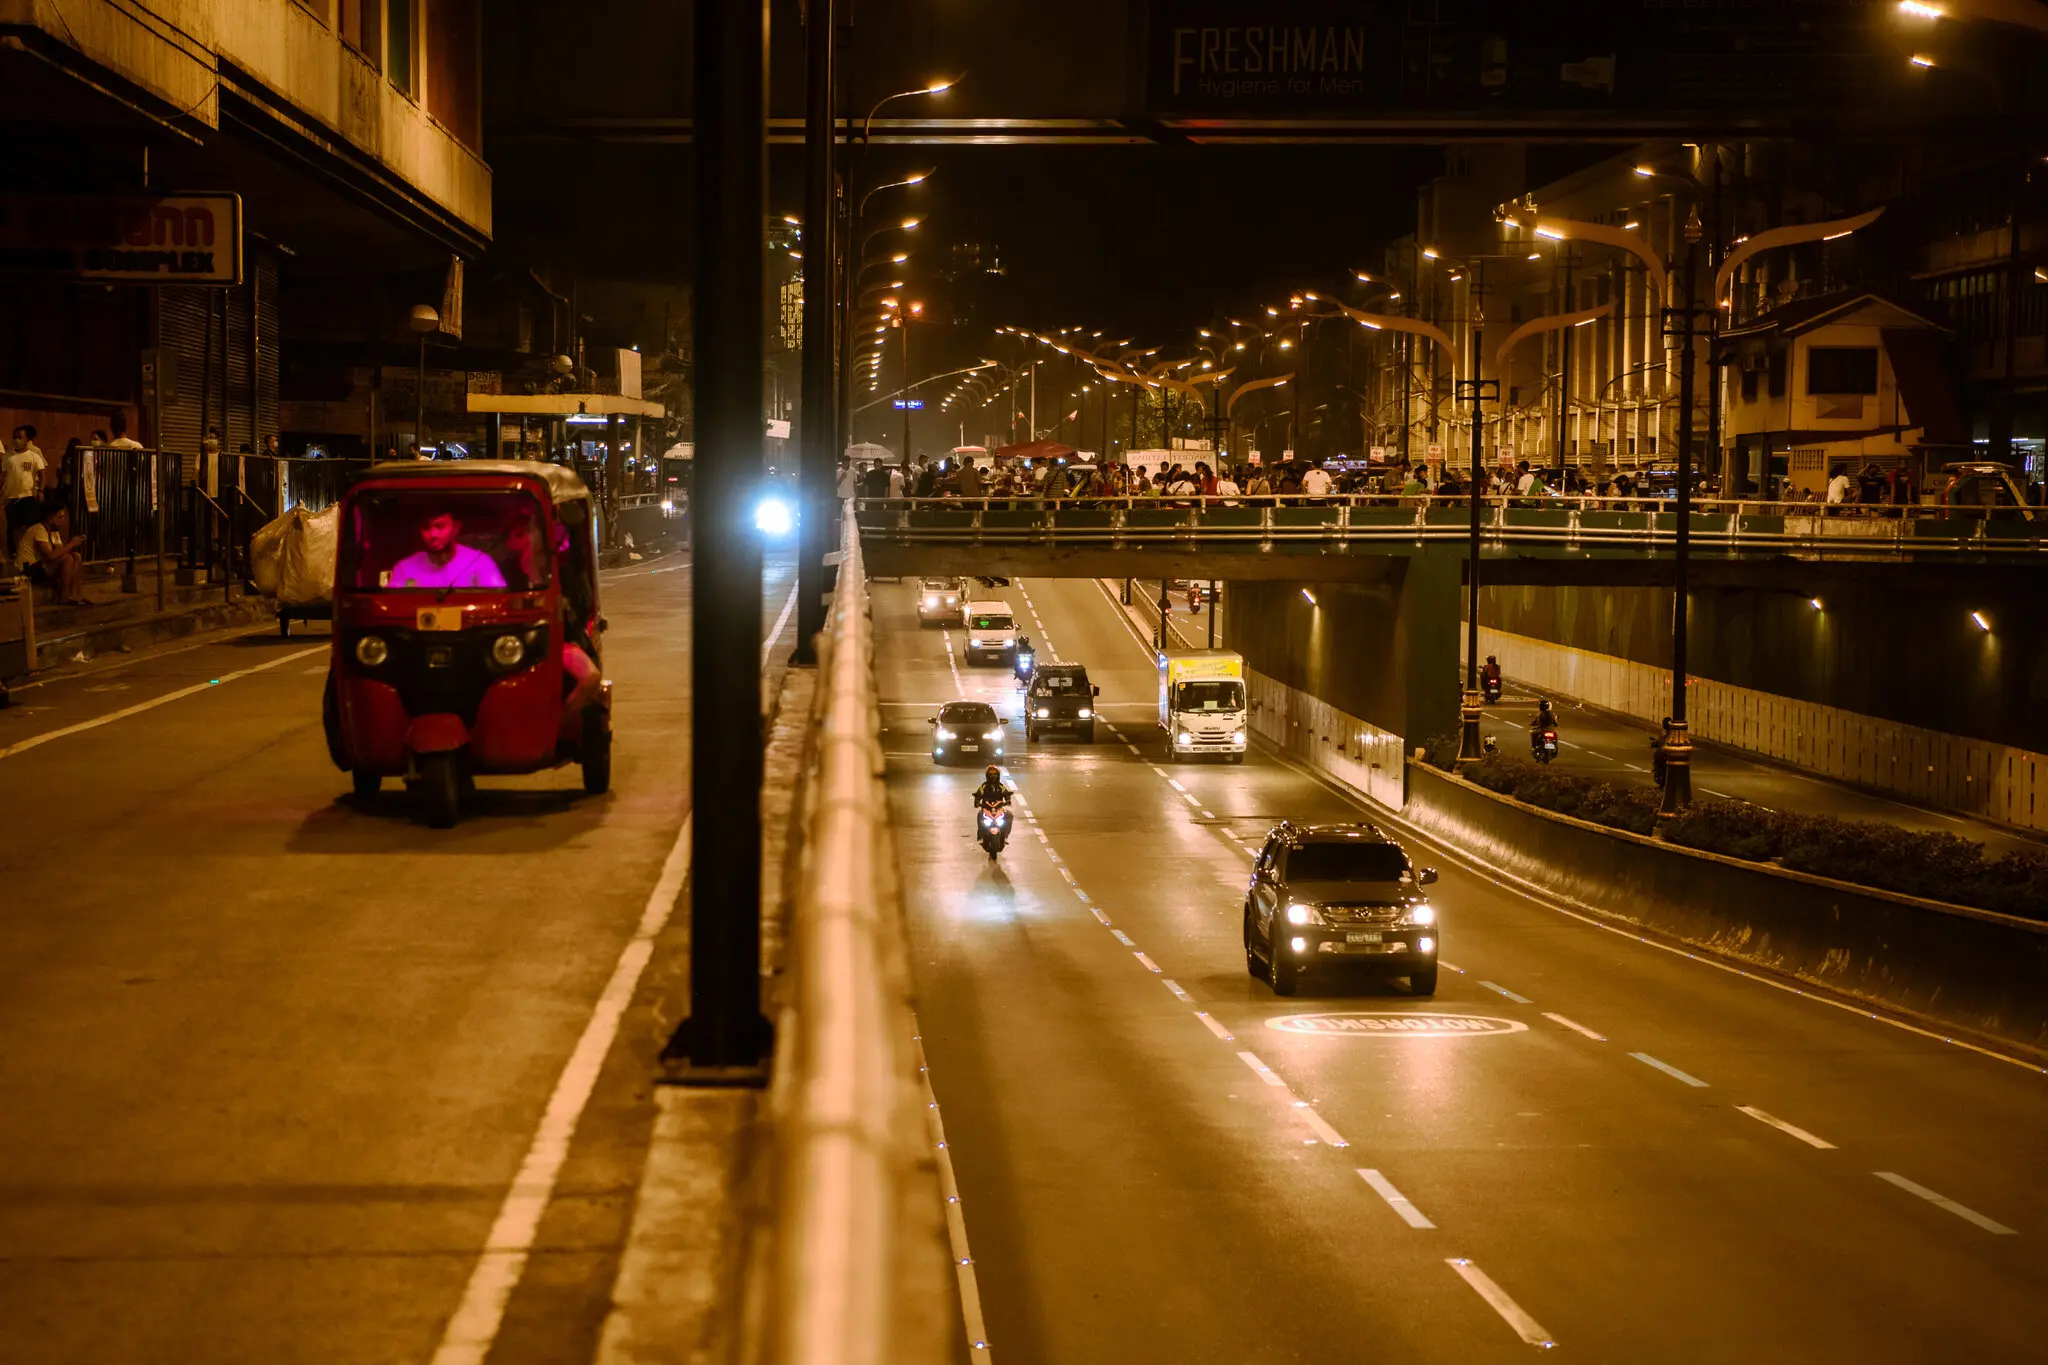 Mientras sube el precio de las gasolinas, ciudades asiáticas disminuyen su uso de automóviles con combustible. La imagen son calles con pocos carros, pero un puente peatonal lleno de personas.